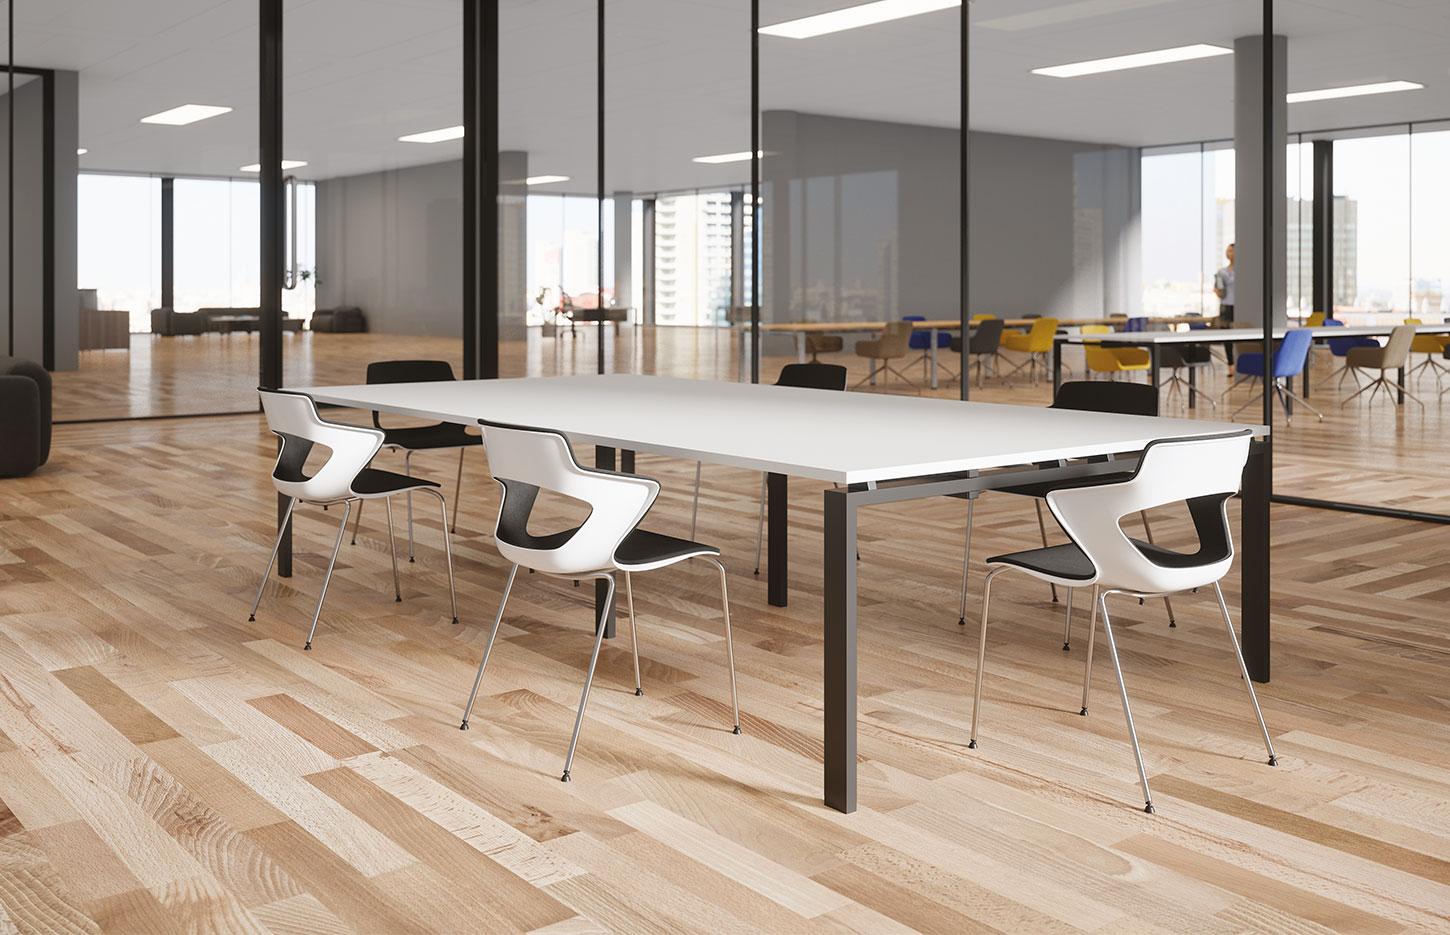 Table de réunion modulable, rectangulaire carré ronde ou ovale, Fabrication Française, gamme Tasman - France Bureau